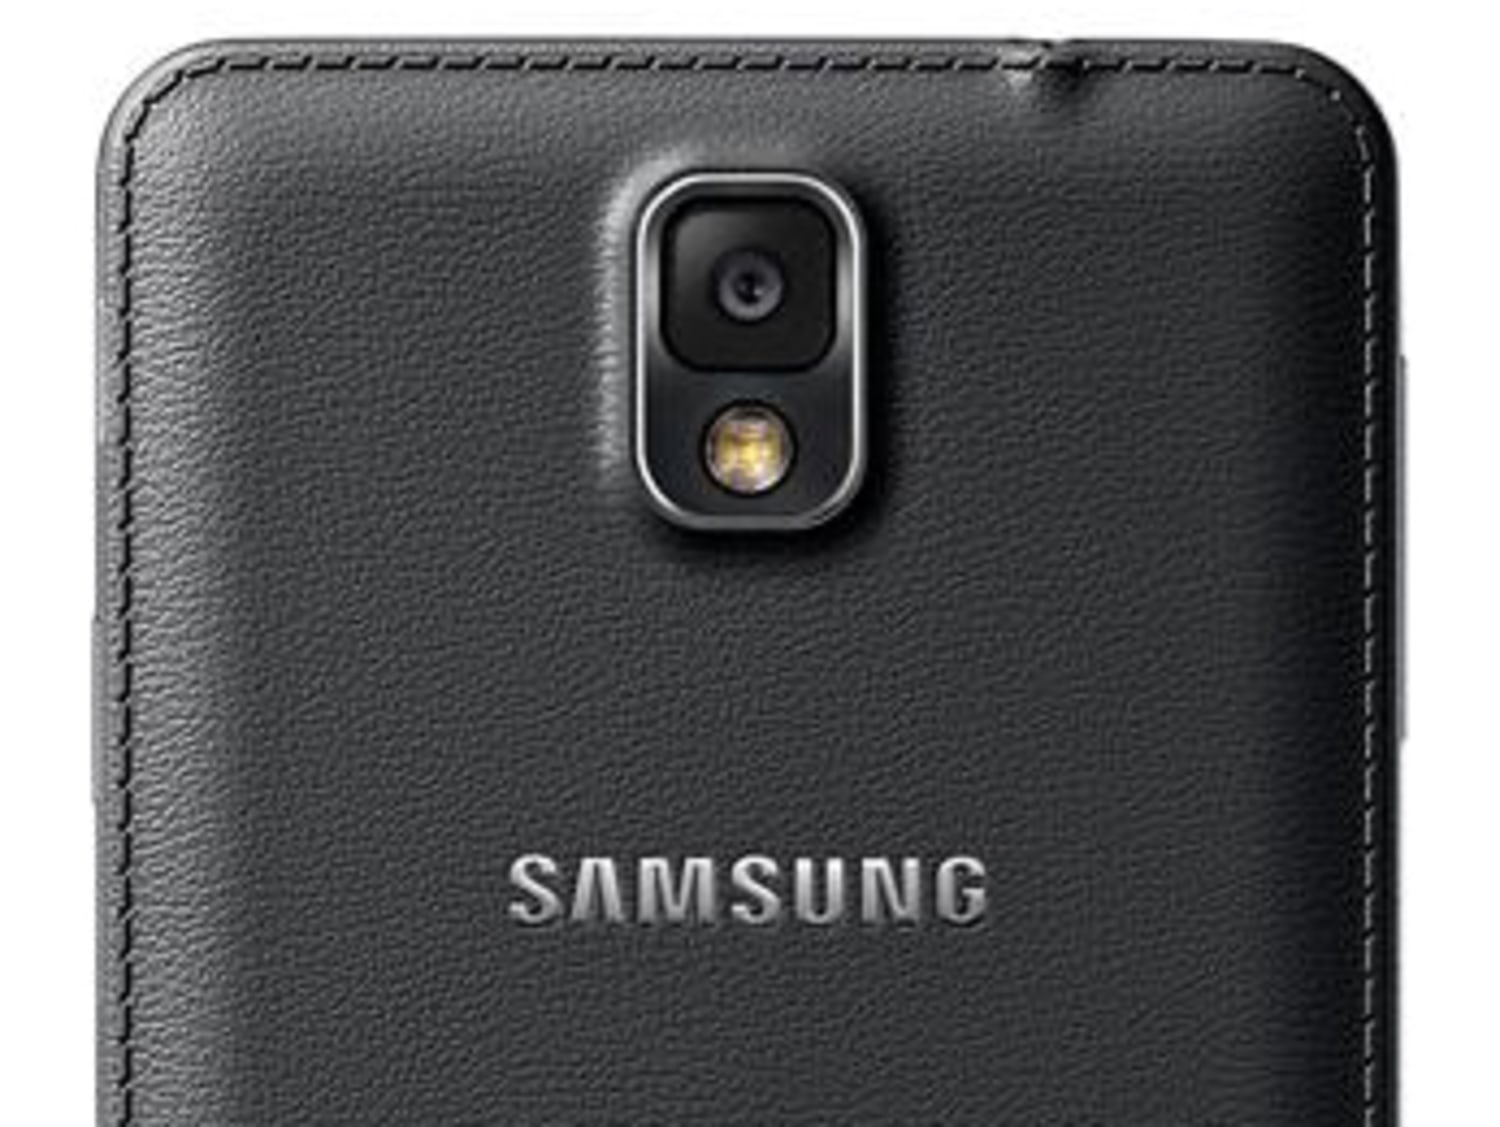 Kilometers Geliefde Helaas New Samsung Galaxy Note 3 phablet has 5.7-inch screen